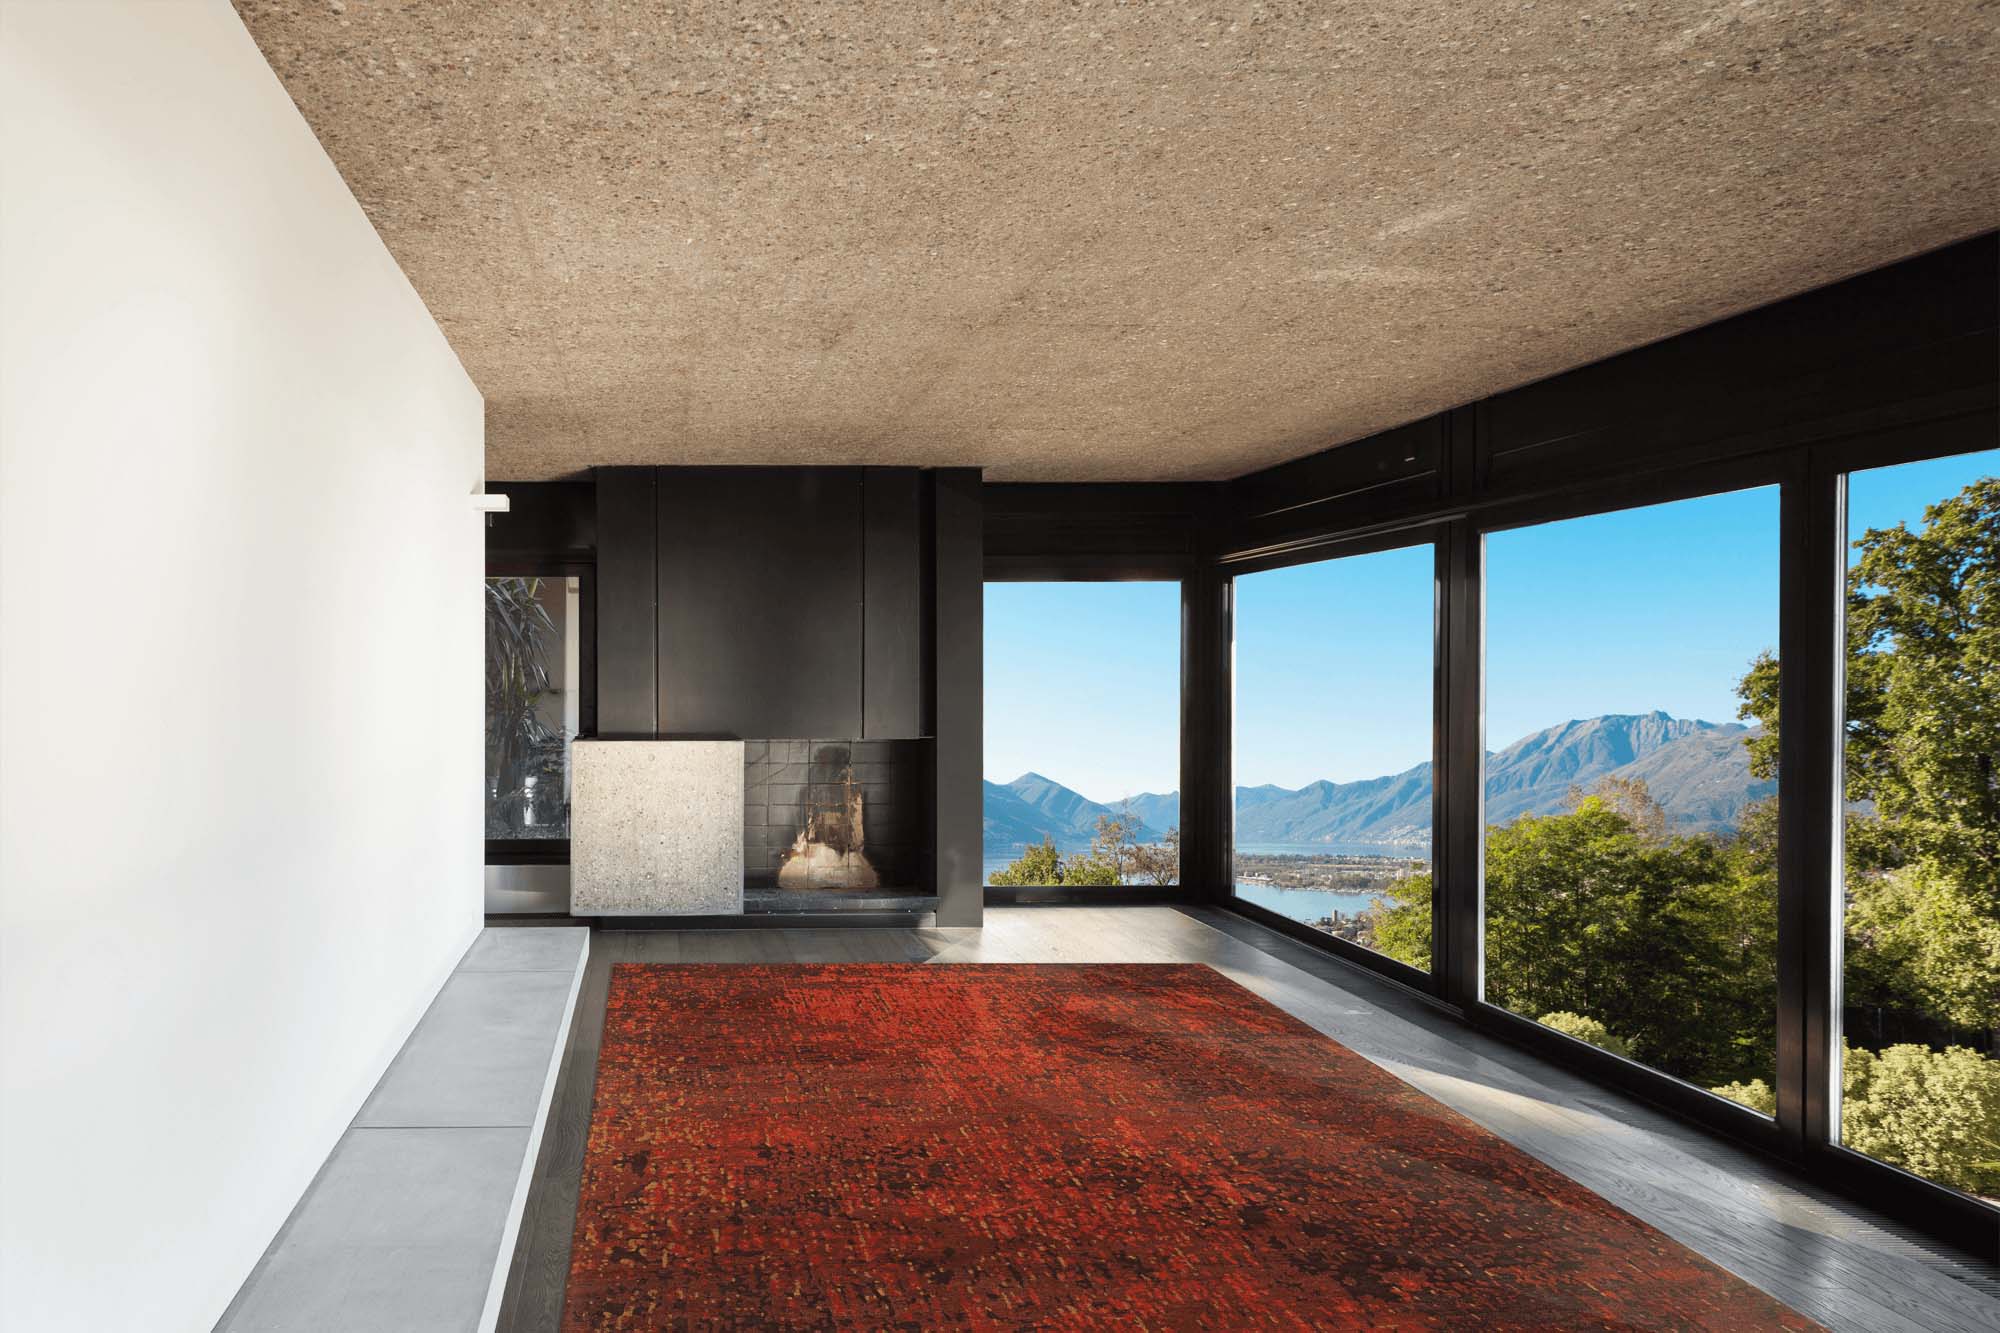 Wohnzimmer mit Glasfront und rotem Teppich Japel - Geba rugs